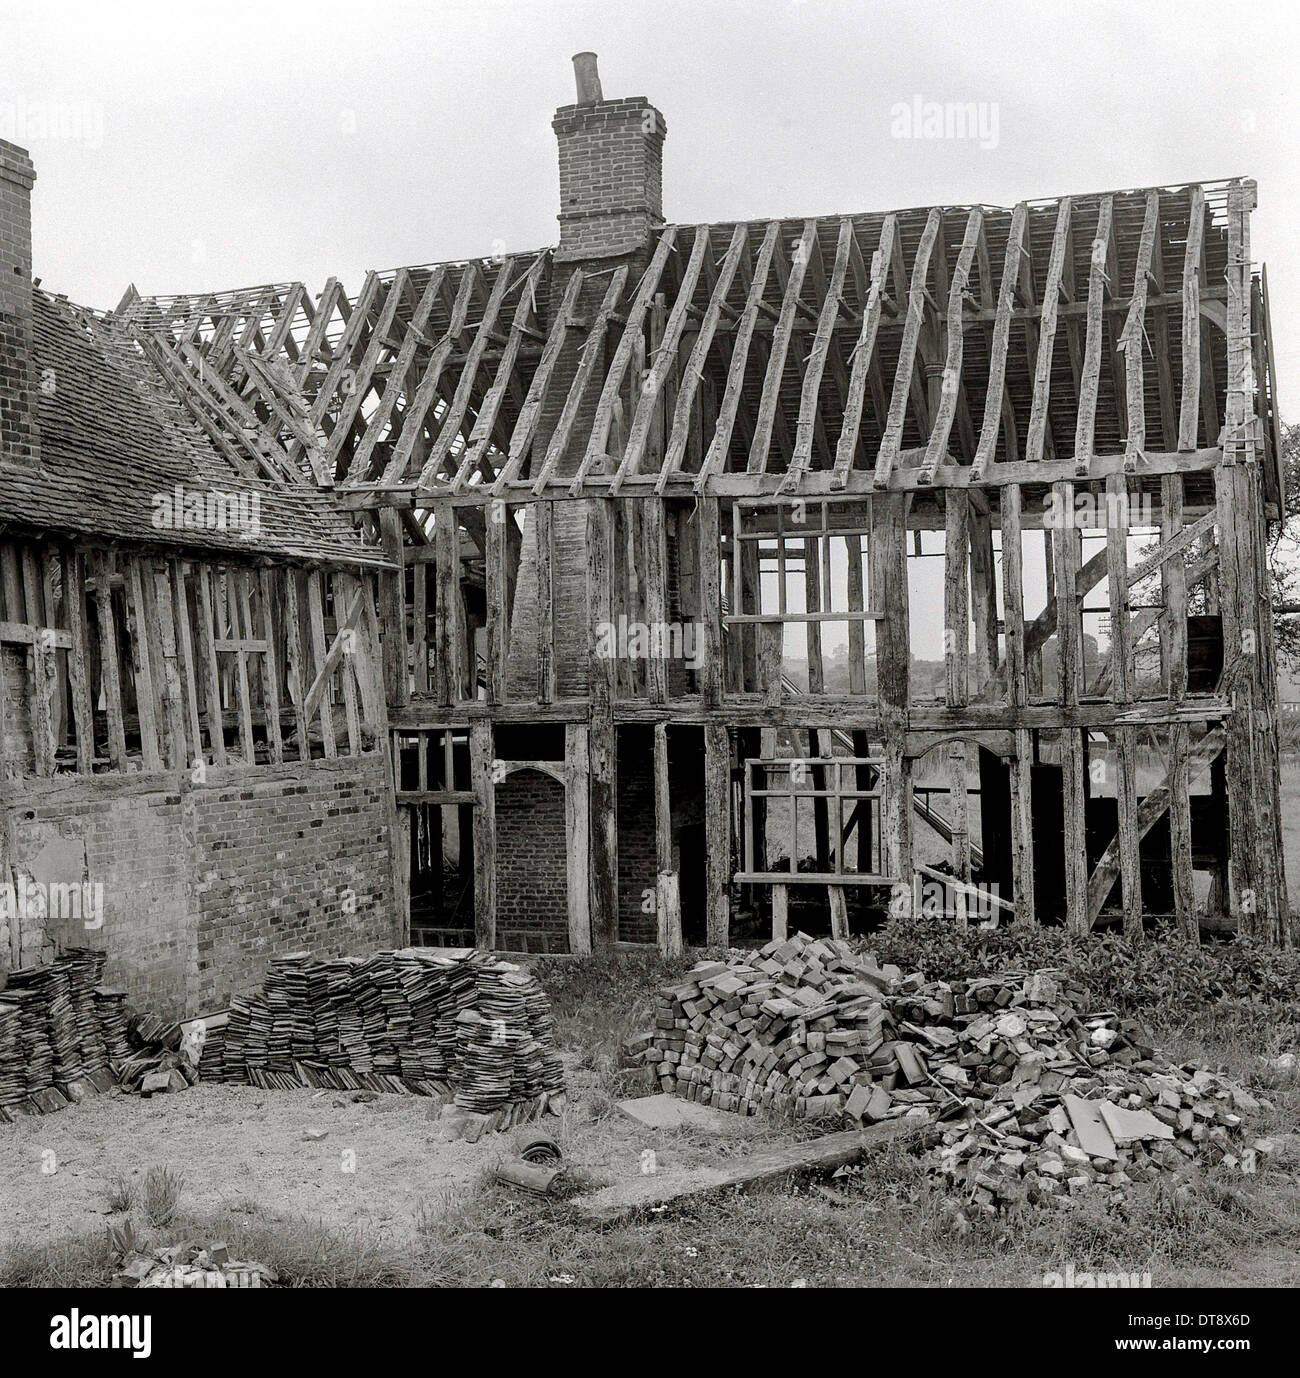 Historisches Bild von der 1950er Jahre zeigt eine alte mittelalterliche Haus oder Stall abgebaut. Stockfoto